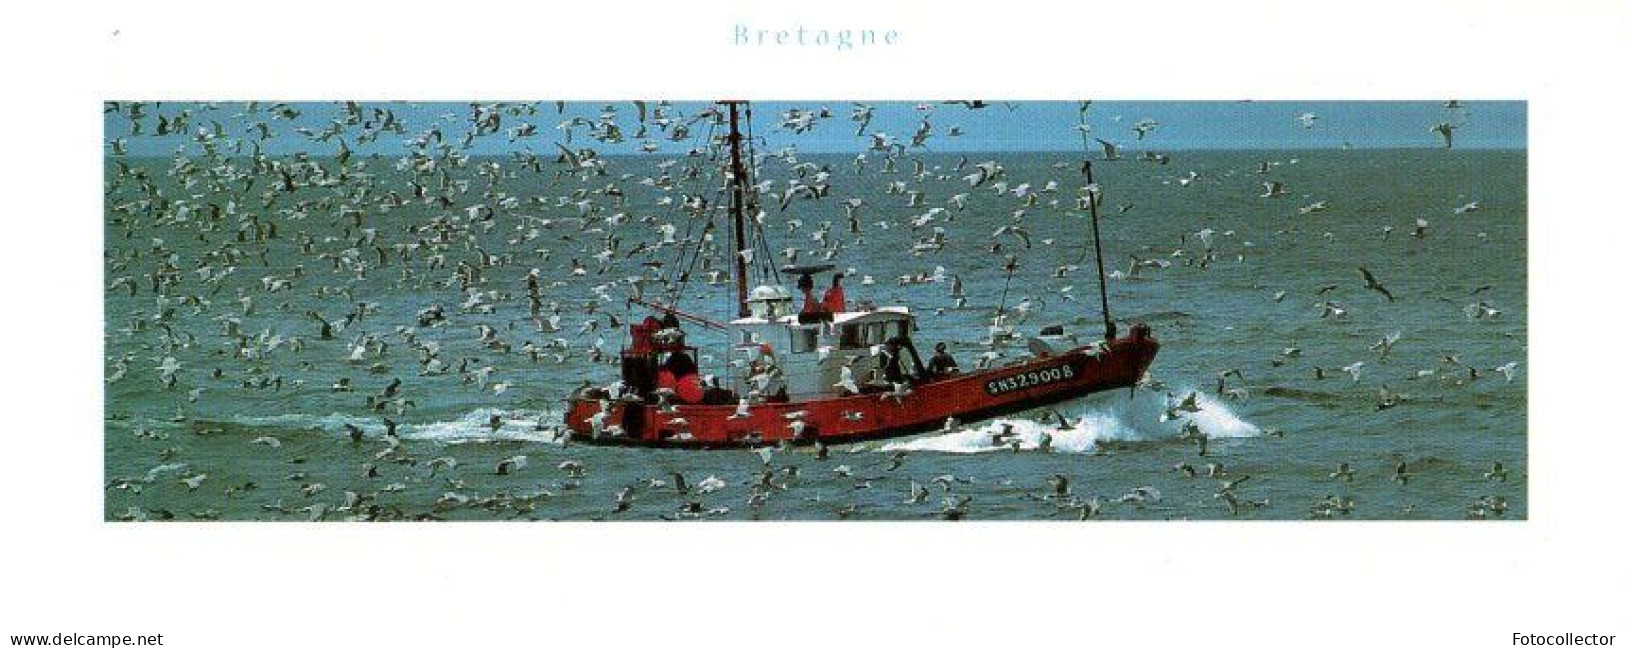 Retour De Pêche Du Chalutier Immatriculé SN329008 (Saint Nazaire 44) - Pesca